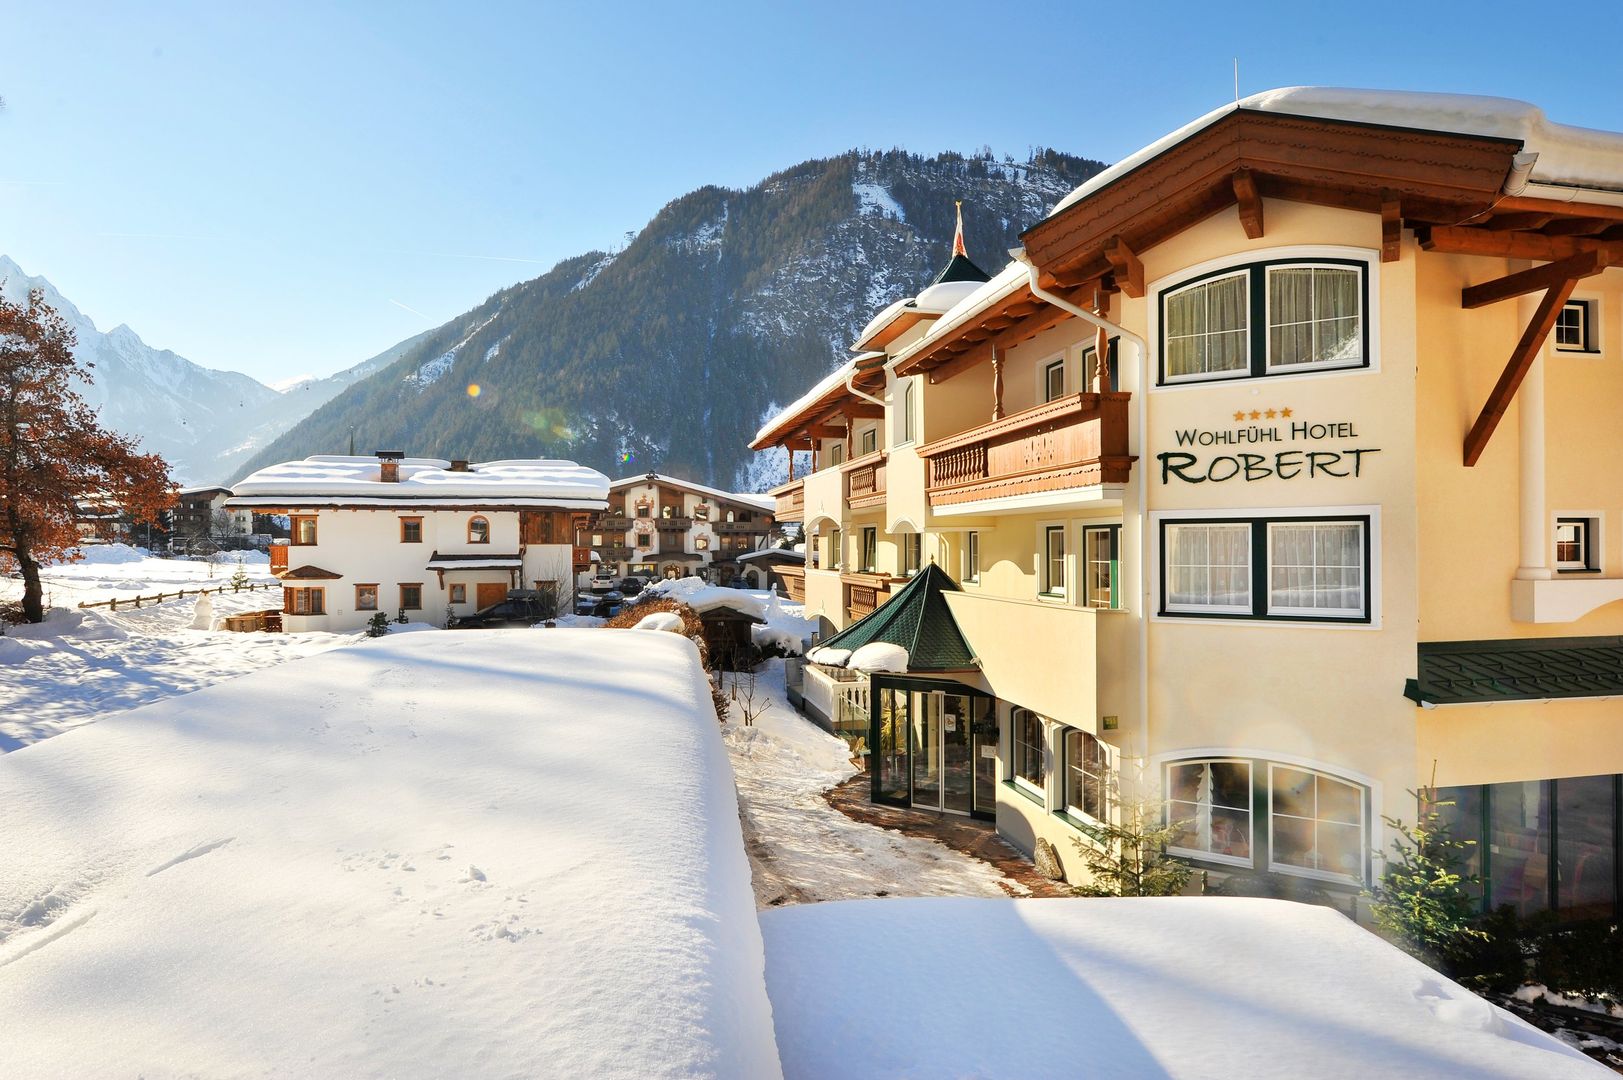 Wohlfuhl Hotel Robert - your B & B in Mayrhofen - Slide 1